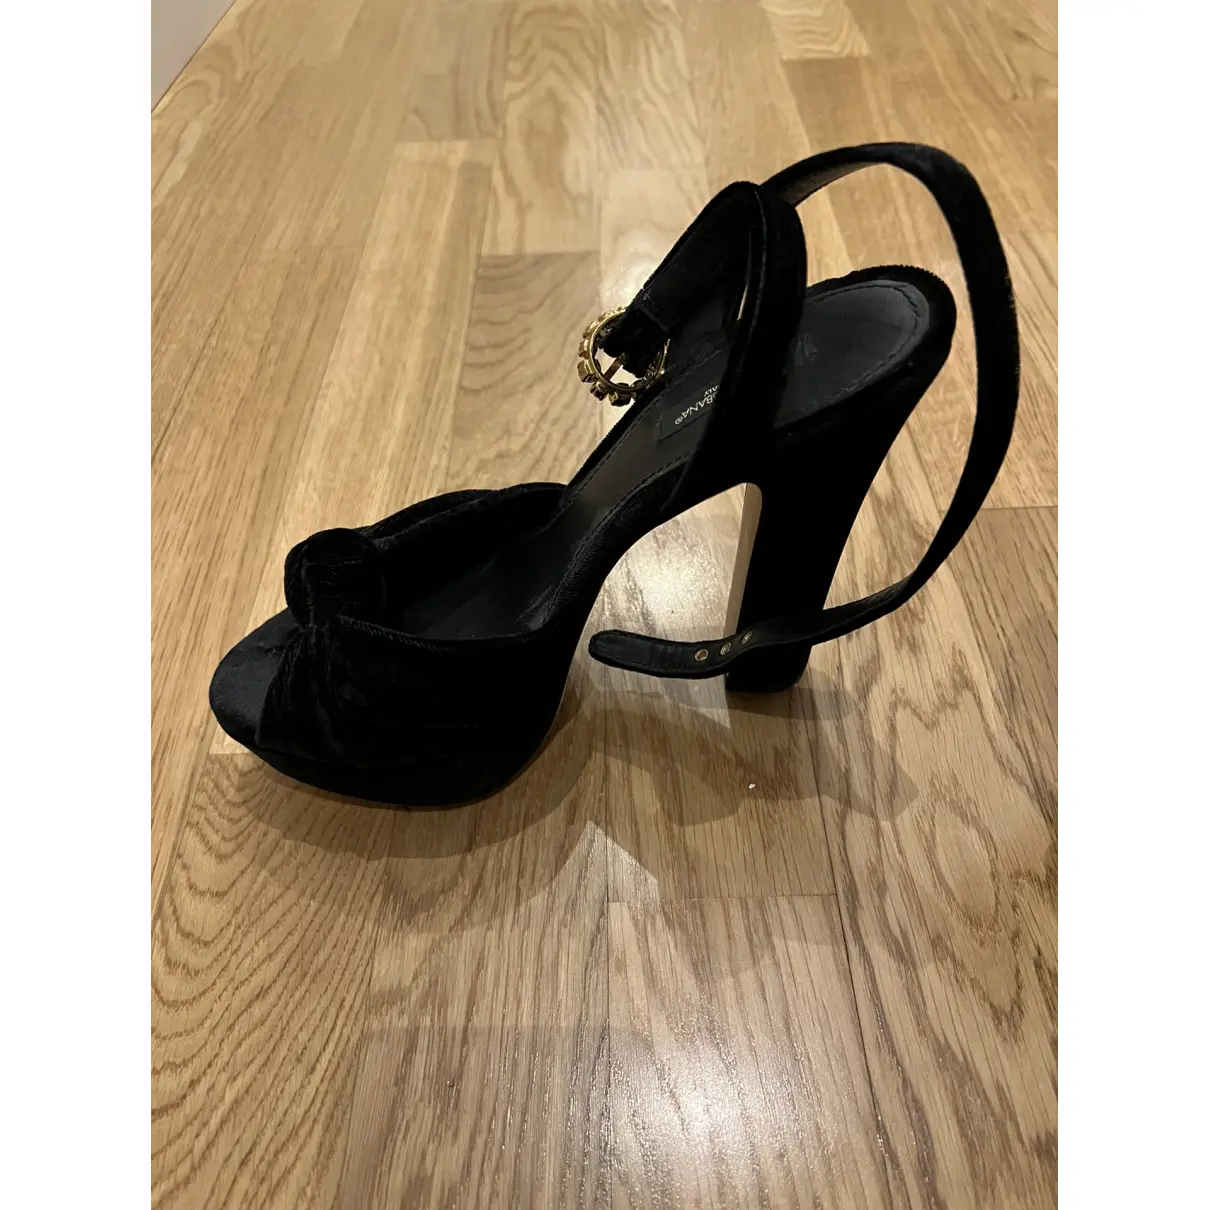 Buy Dolce & Gabbana Velvet sandals online